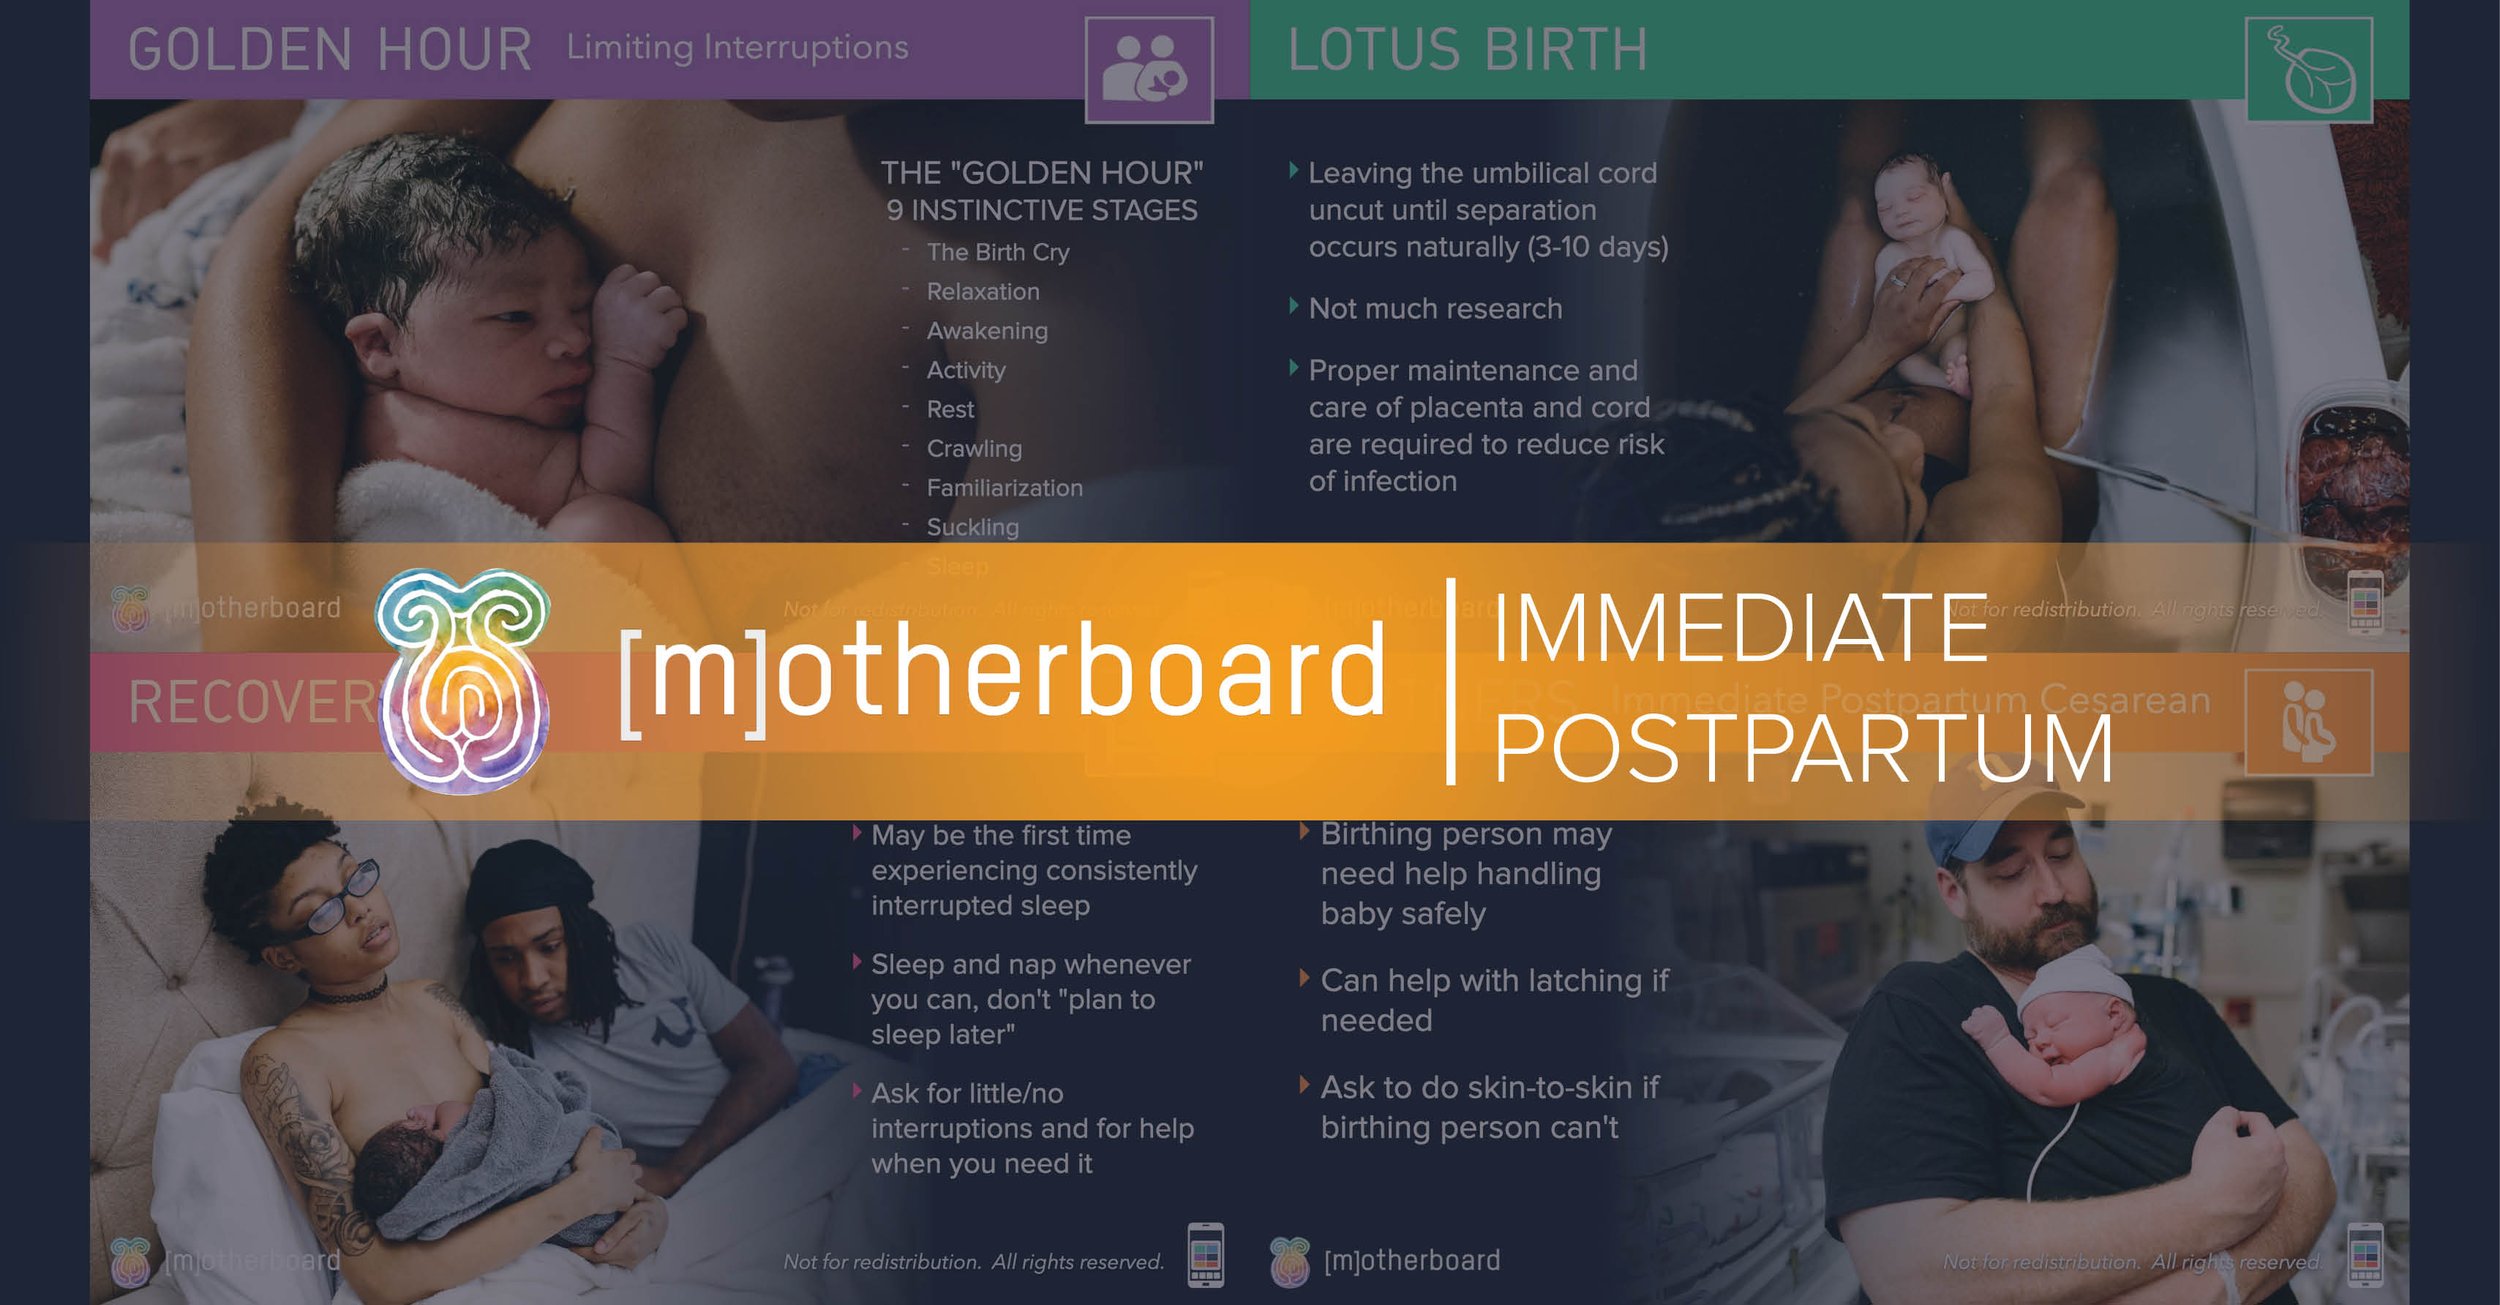 Immediate Postpartum Teaser Image.jpg